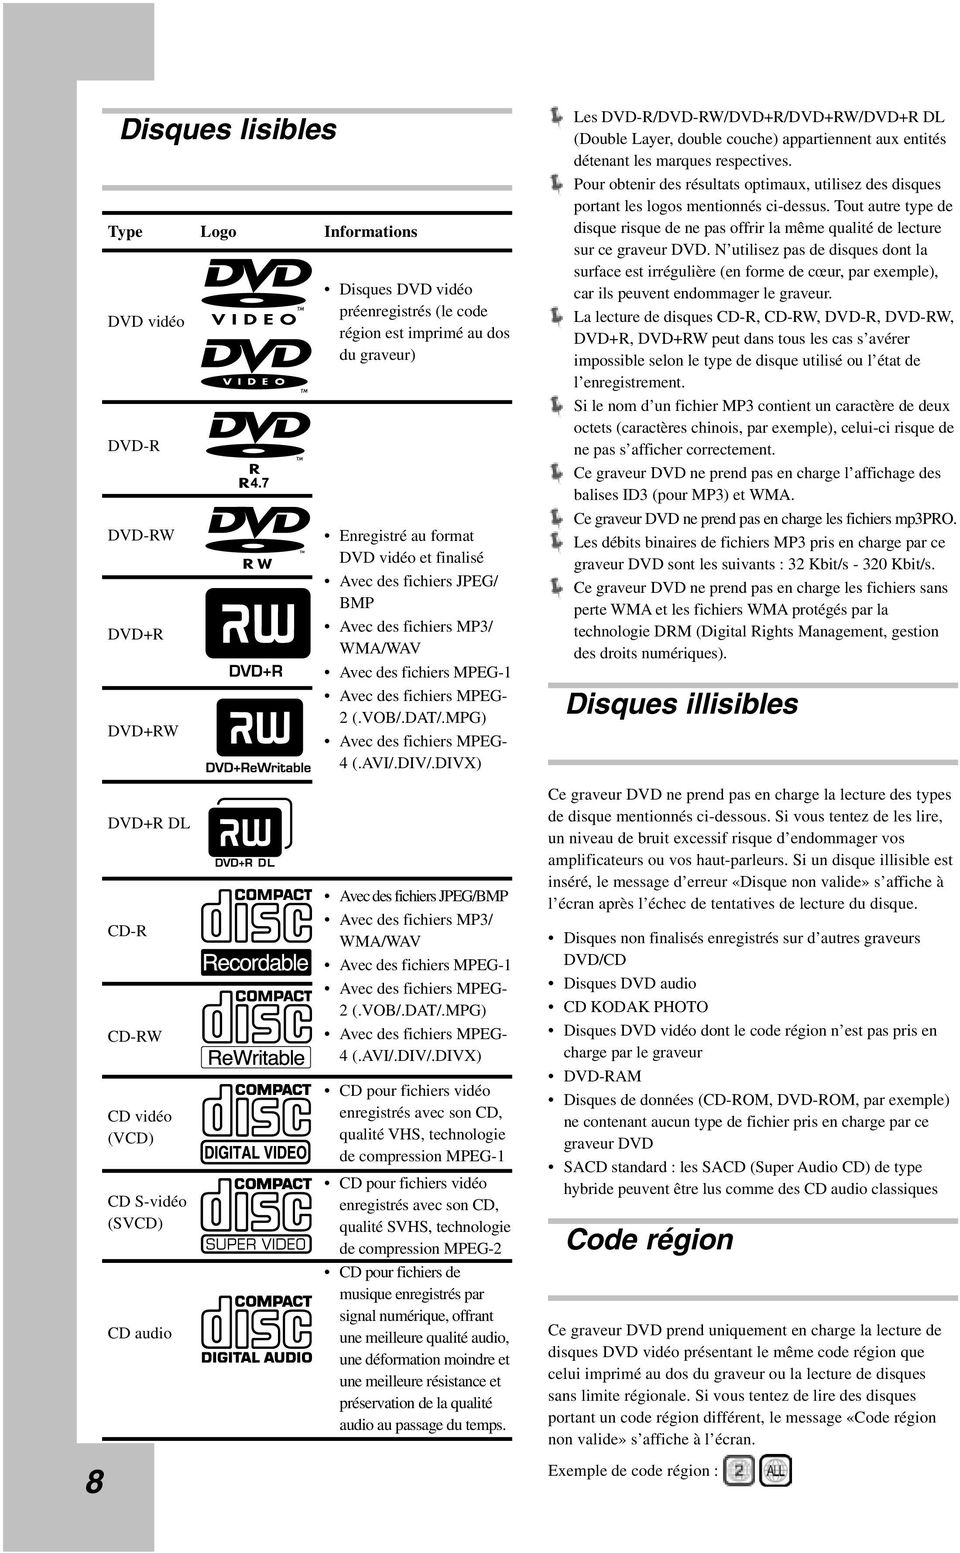 DIVX) Les DVD-R/DVD-RW/DVD+R/DVD+RW/DVD+R DL (Double Layer, double couche) appartiennent aux entités détenant les marques respectives.